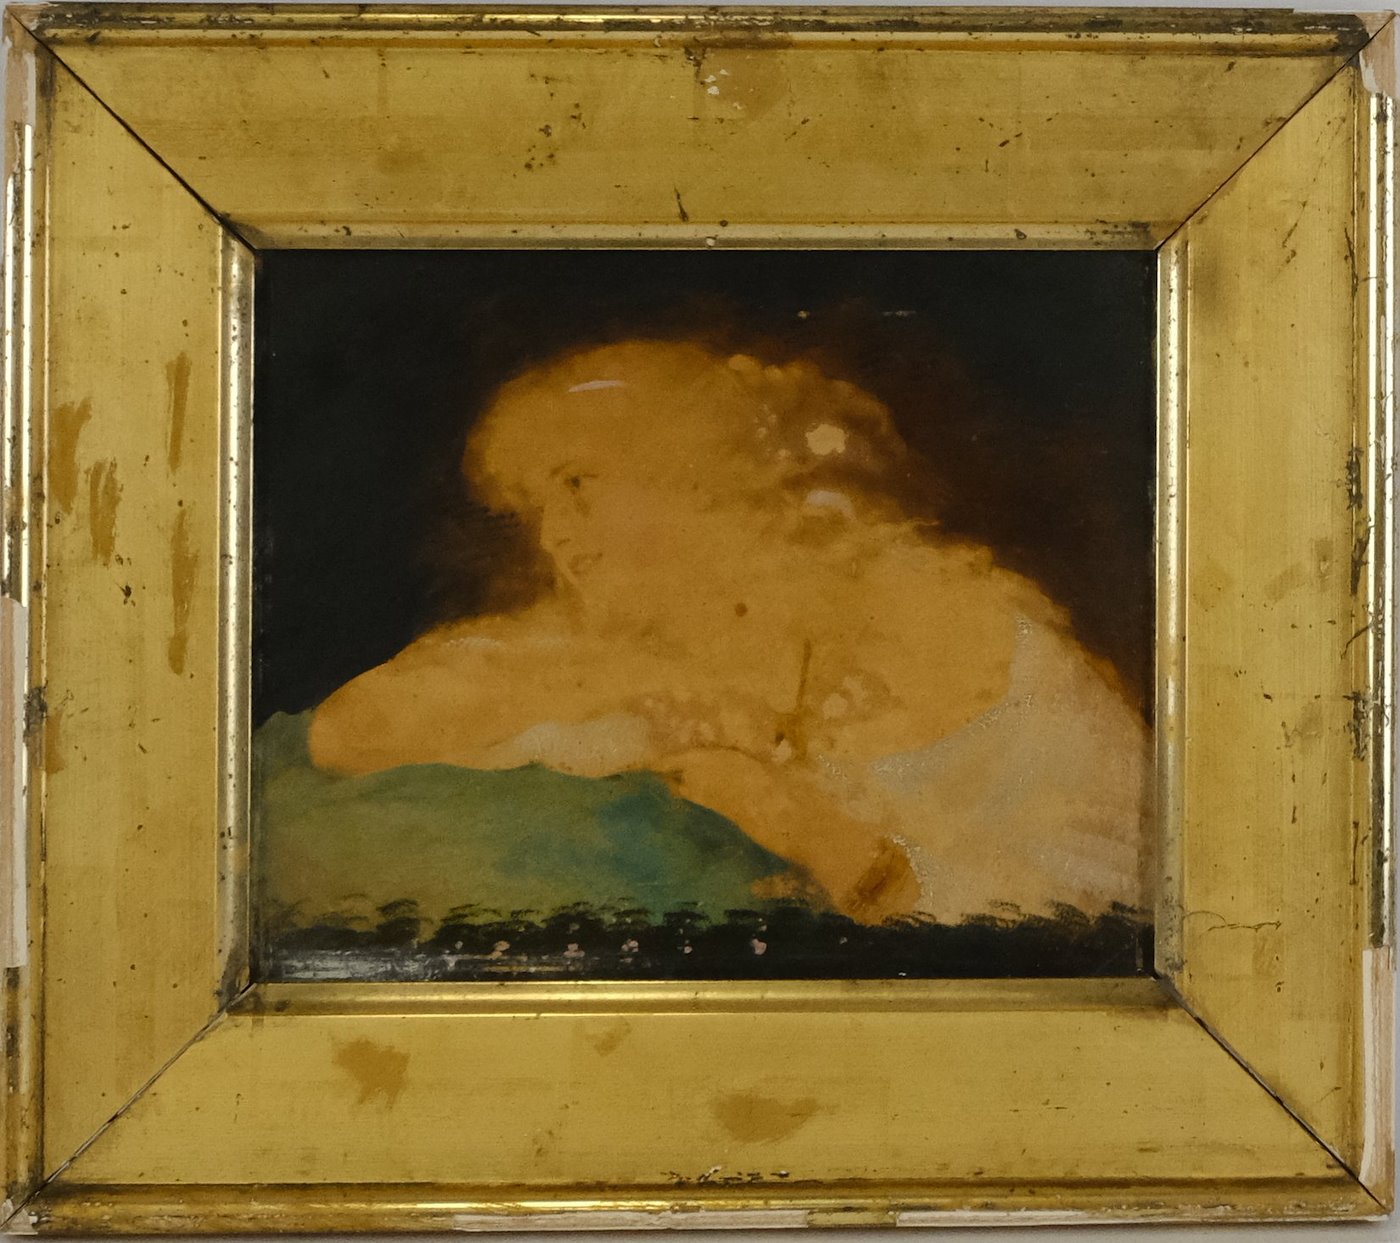 Neznámý autor - Slečny- párové obrazy, západoevropský malíř konce 19. století